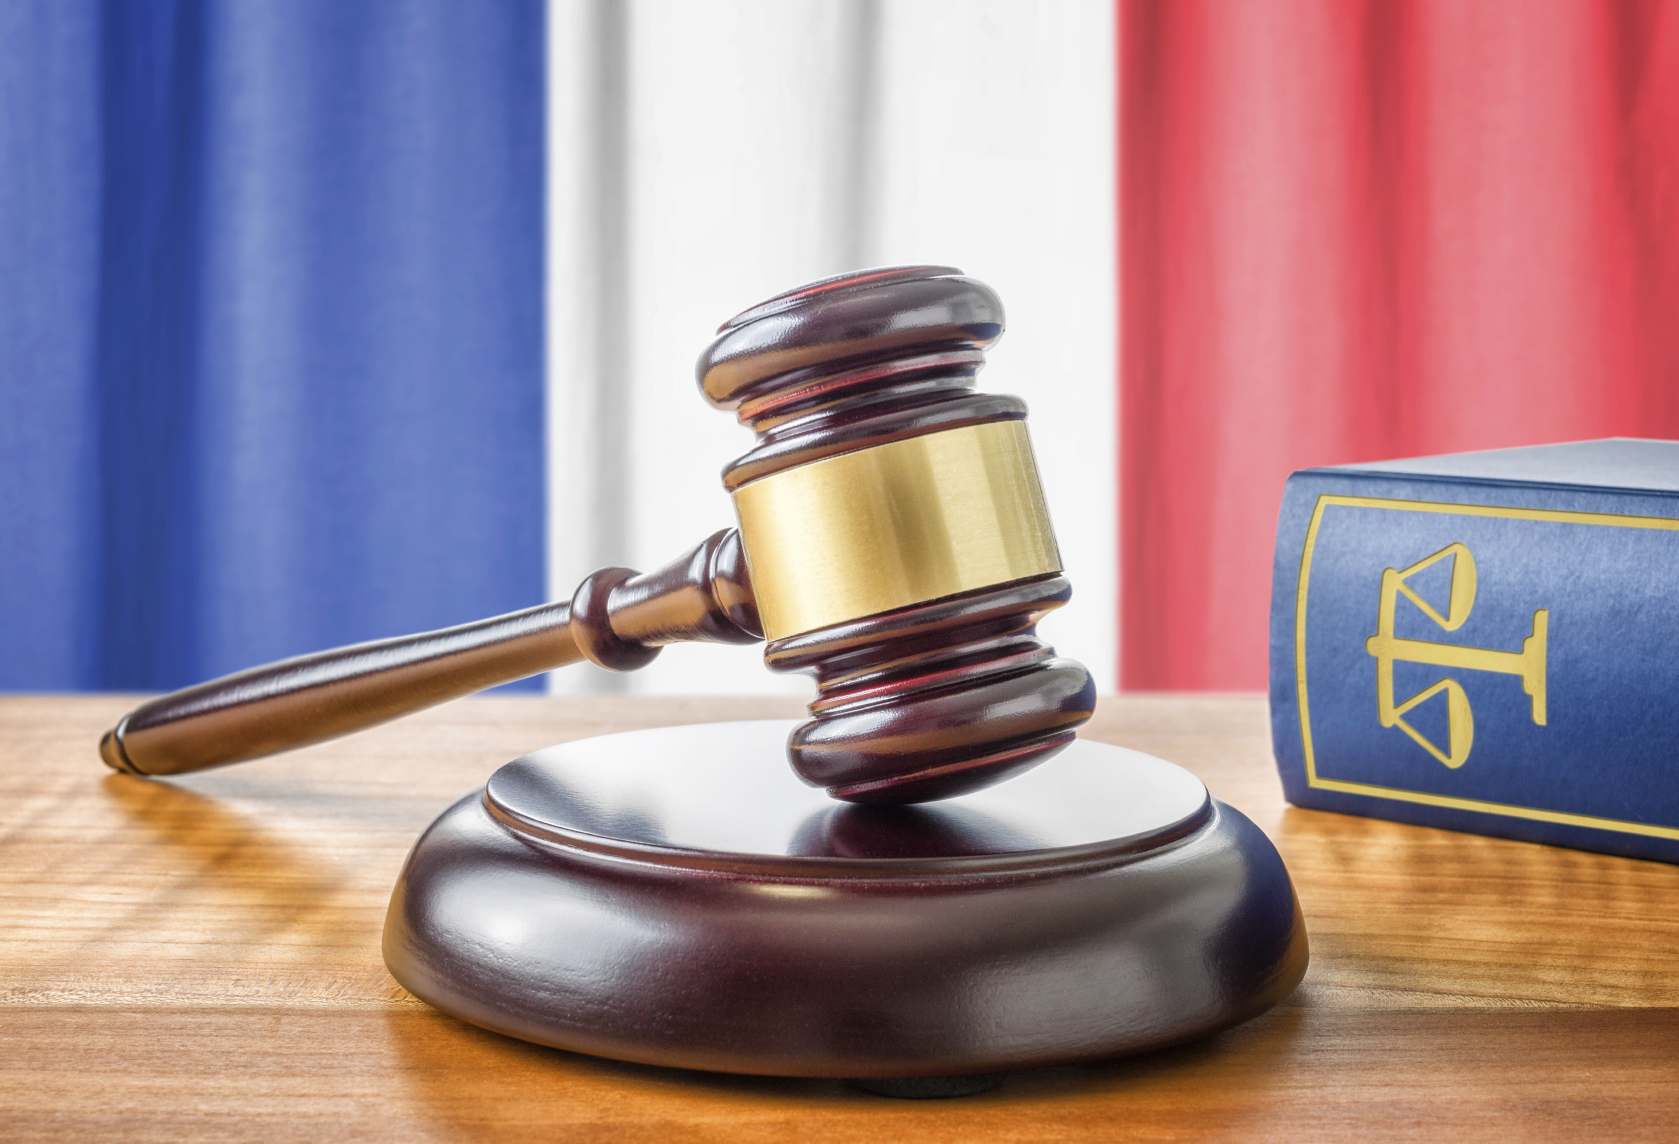 Francia solicitó este lunes a Bélgica la extradición del supuesto terrorista vinculado a los atentados en París del año pasado